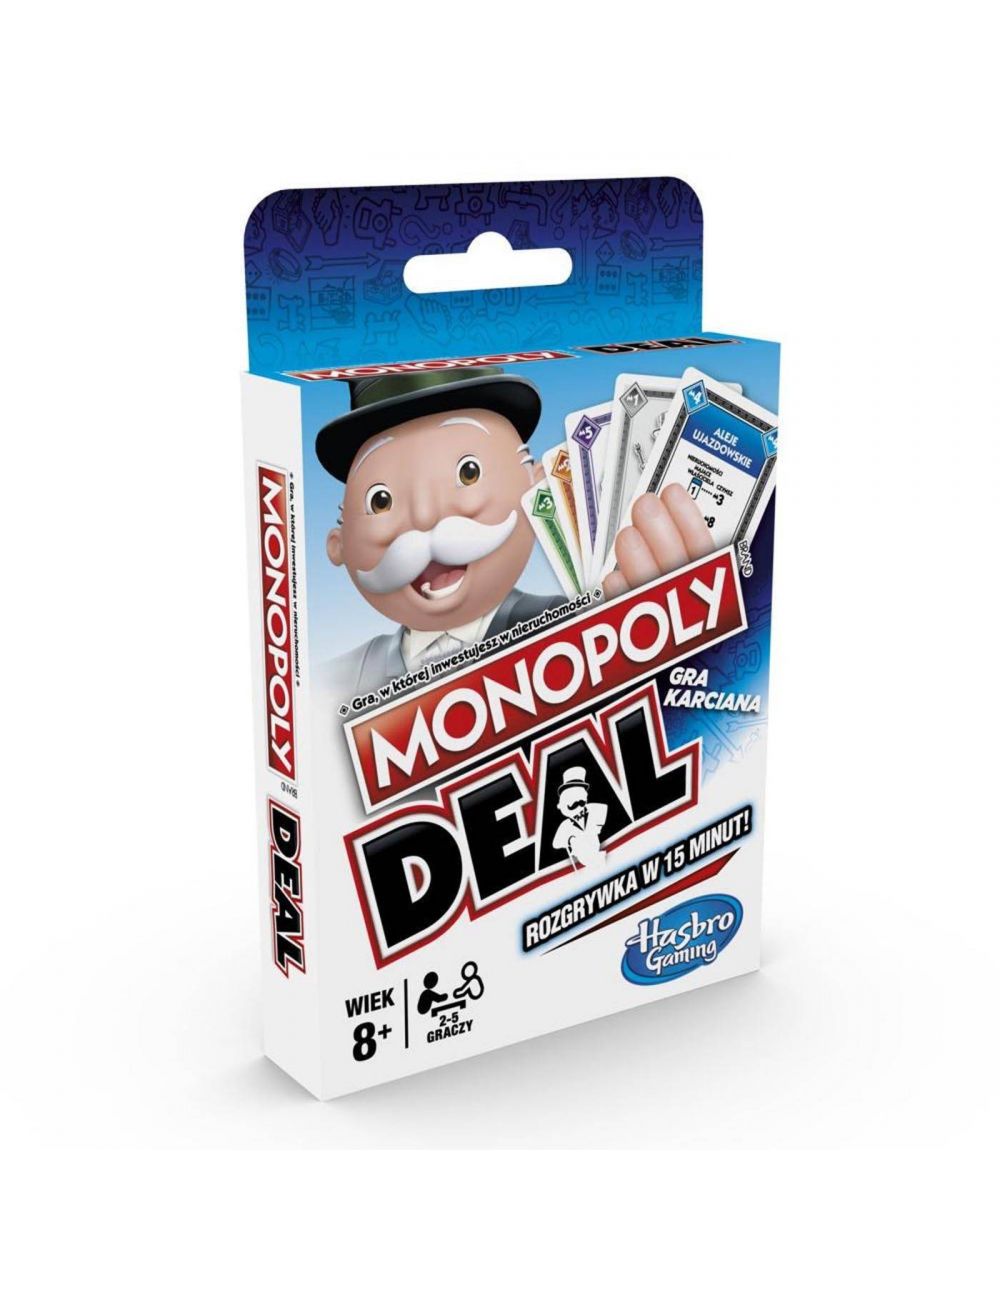 MONOPOLY Deal ekonomiczna gra karciana